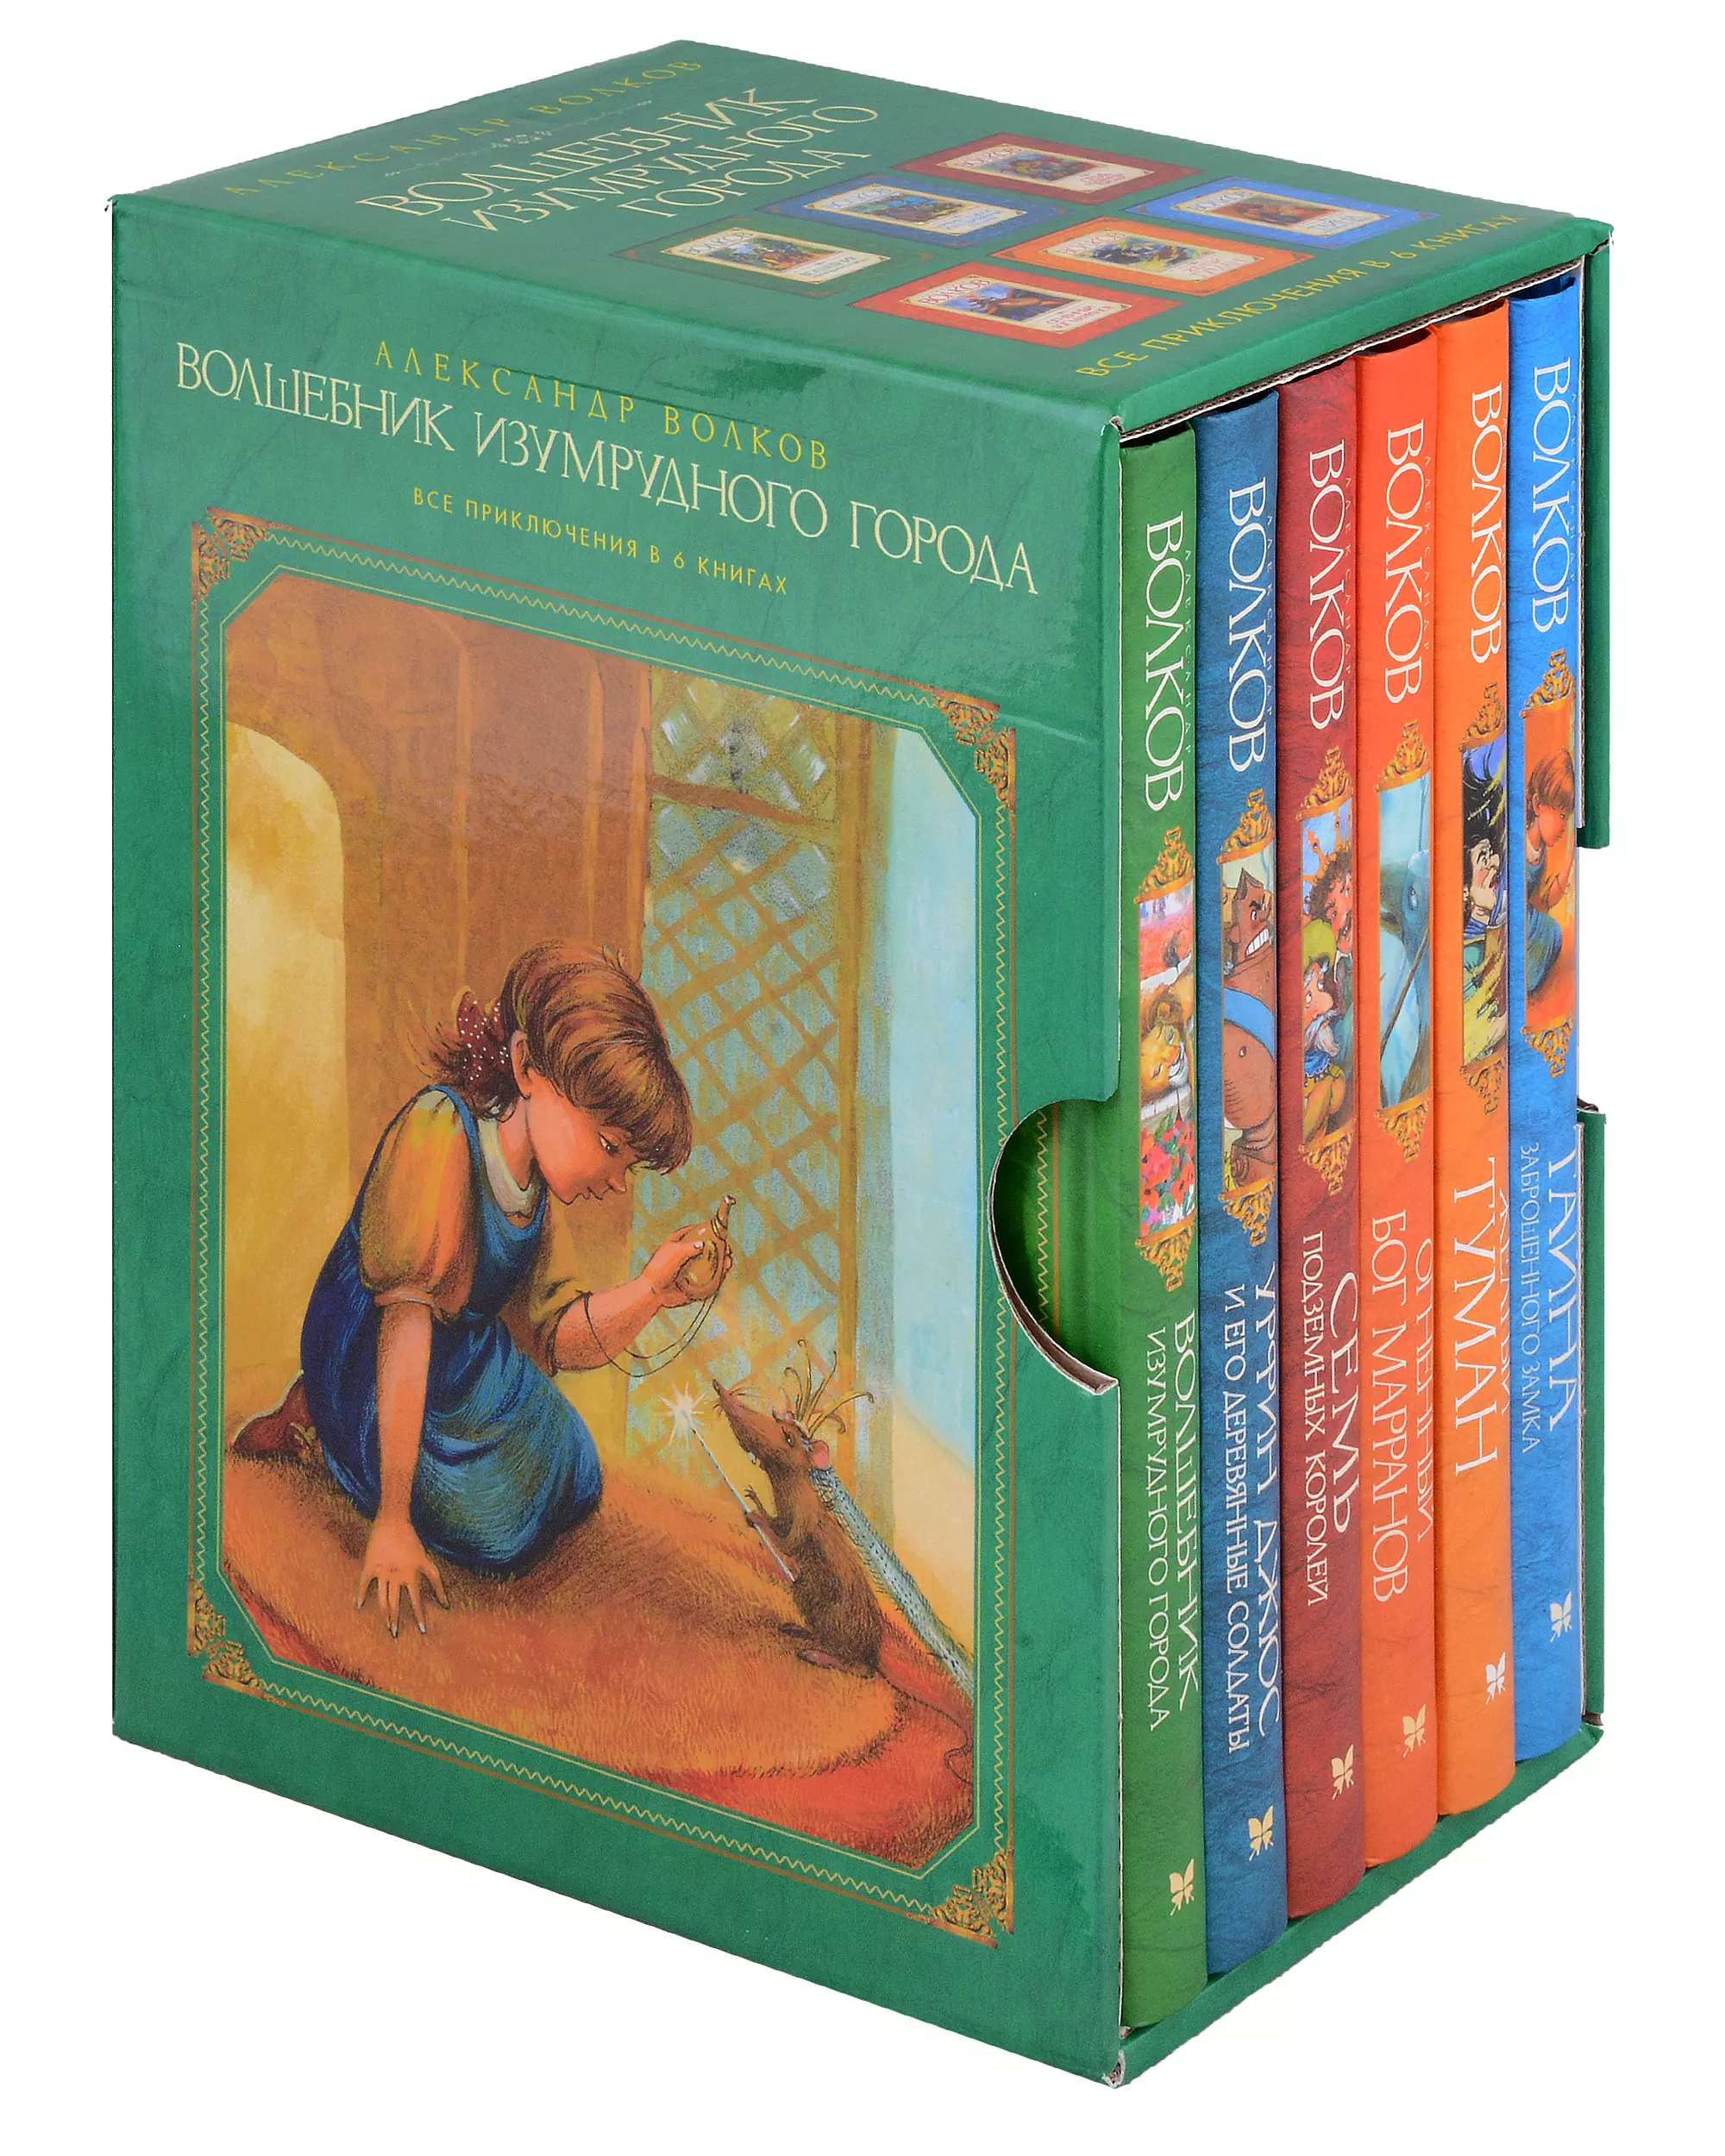 Комплект: Волшебник Изумрудного города (комплект из 6-ти книг в футляре) мир современного ислама выпуск 1 комплект из 9 книг в футляре